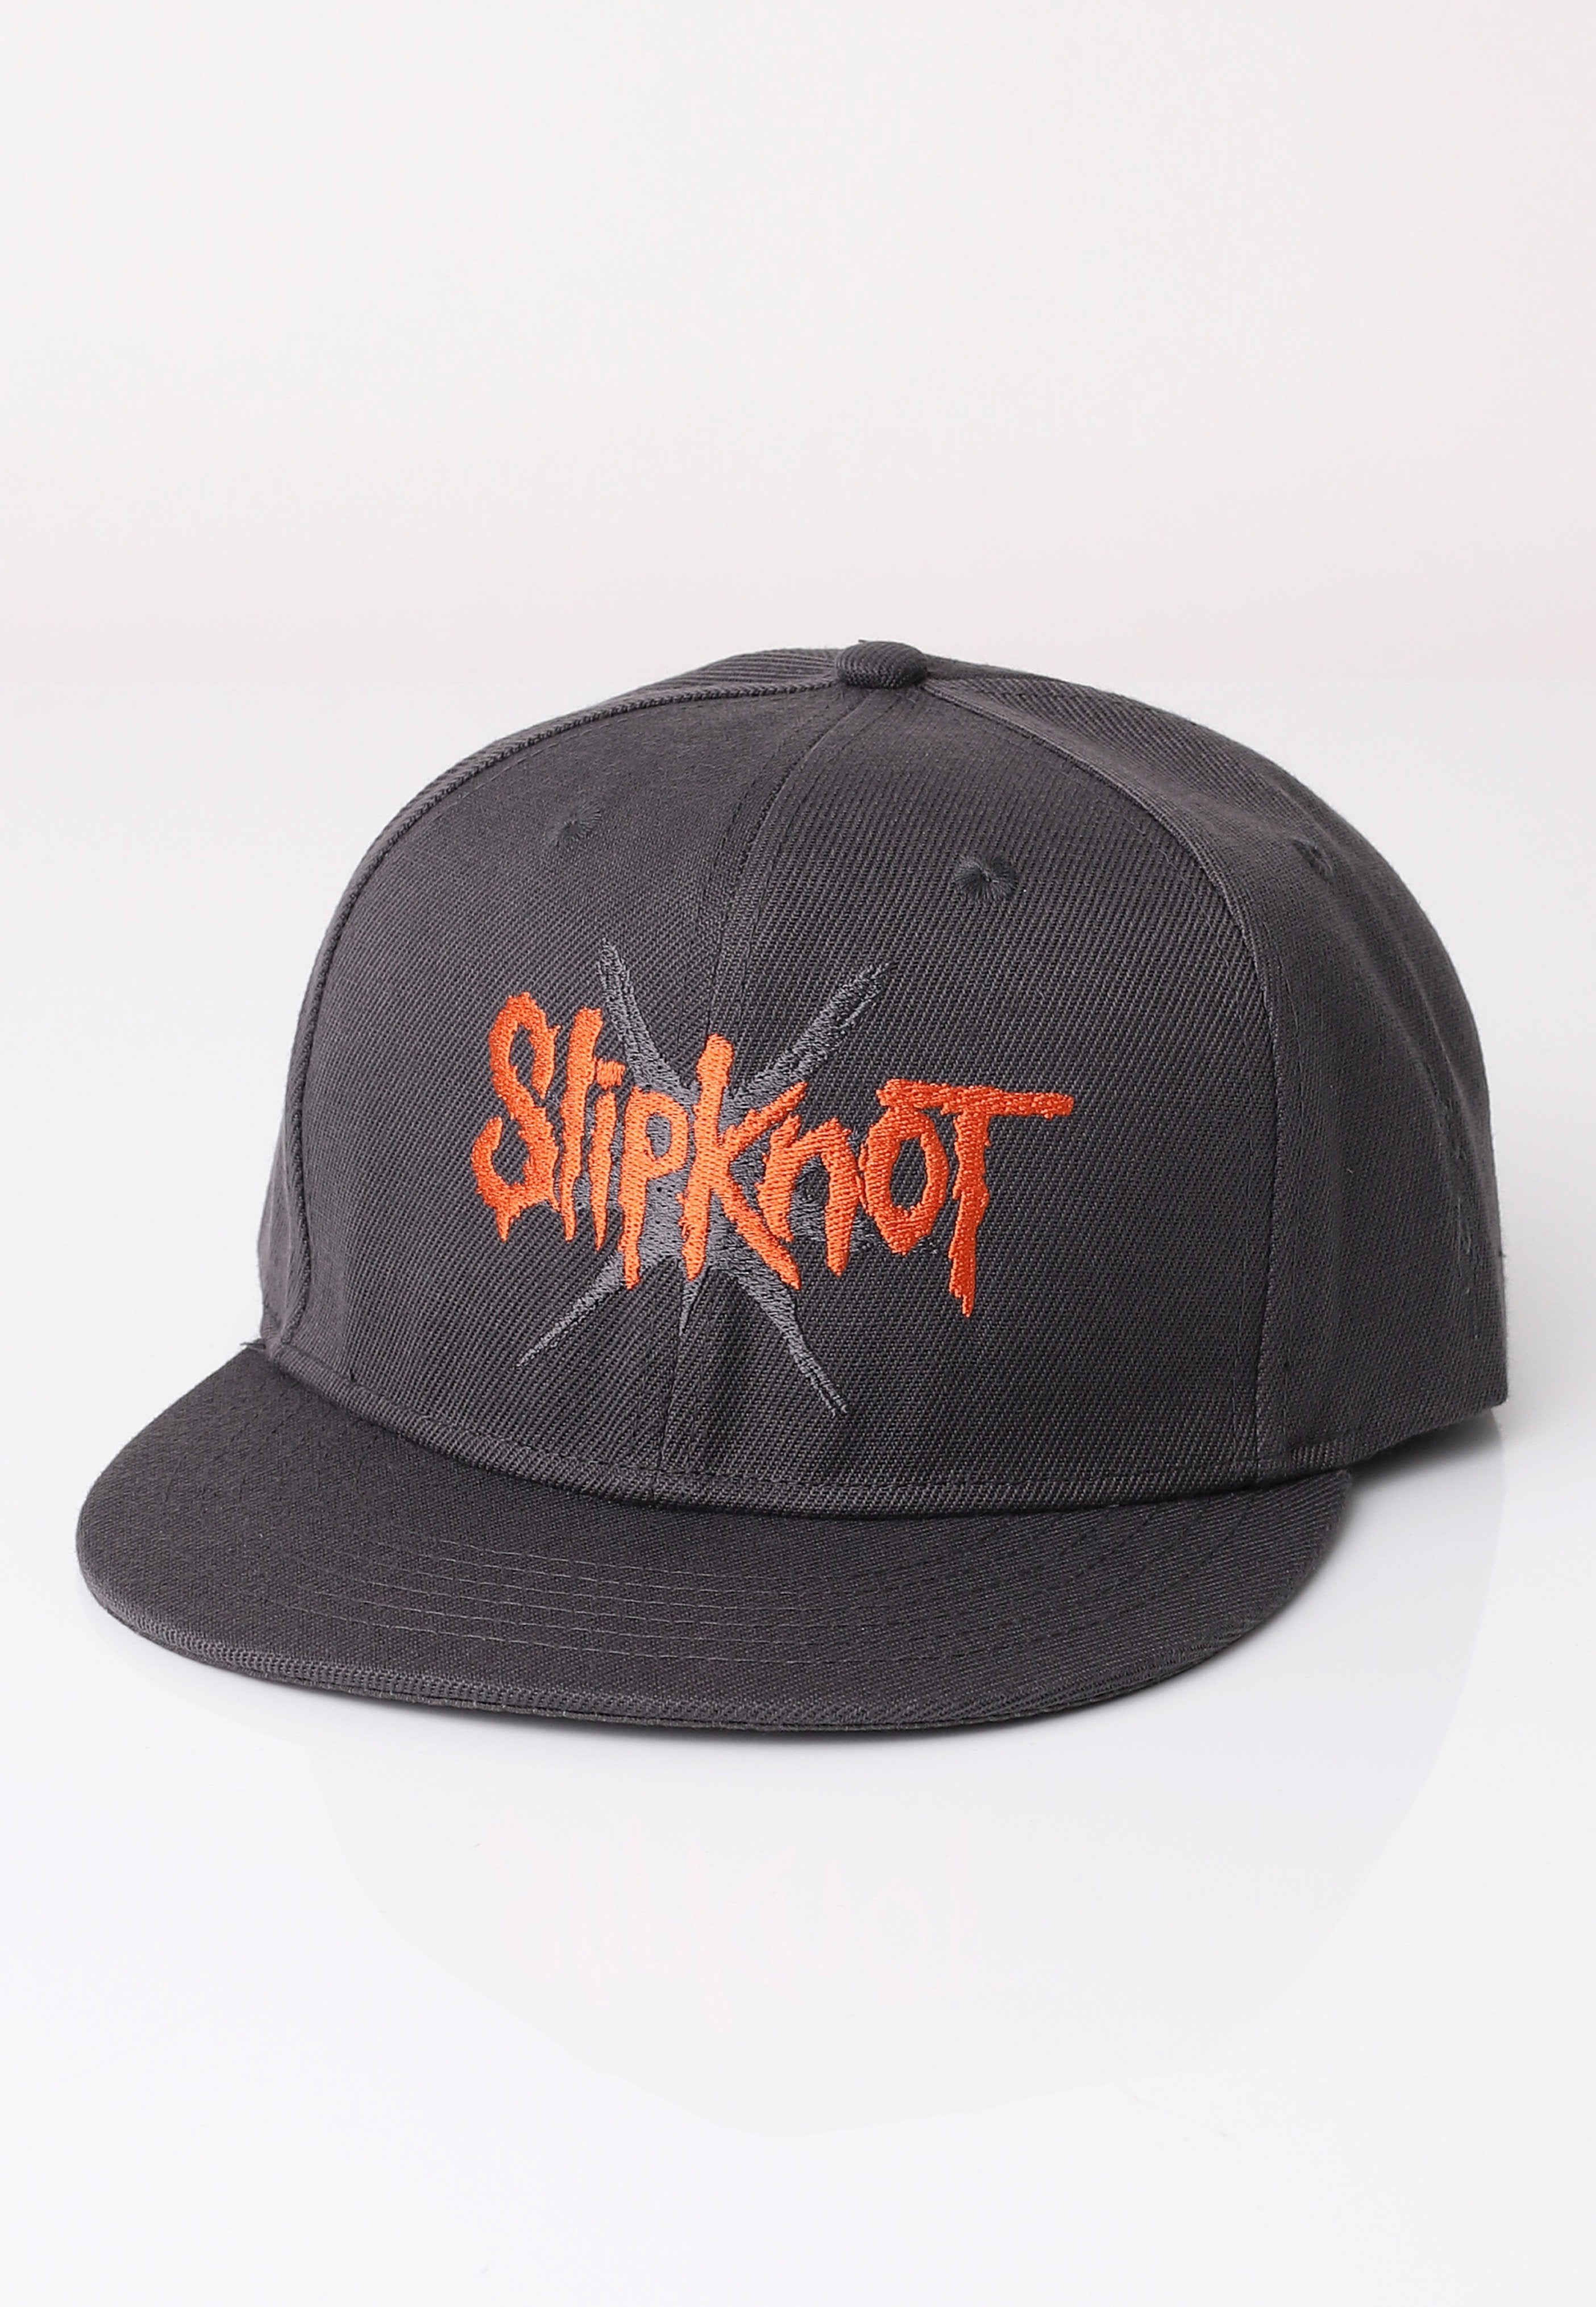 Slipknot - 9 Point Star - Cap